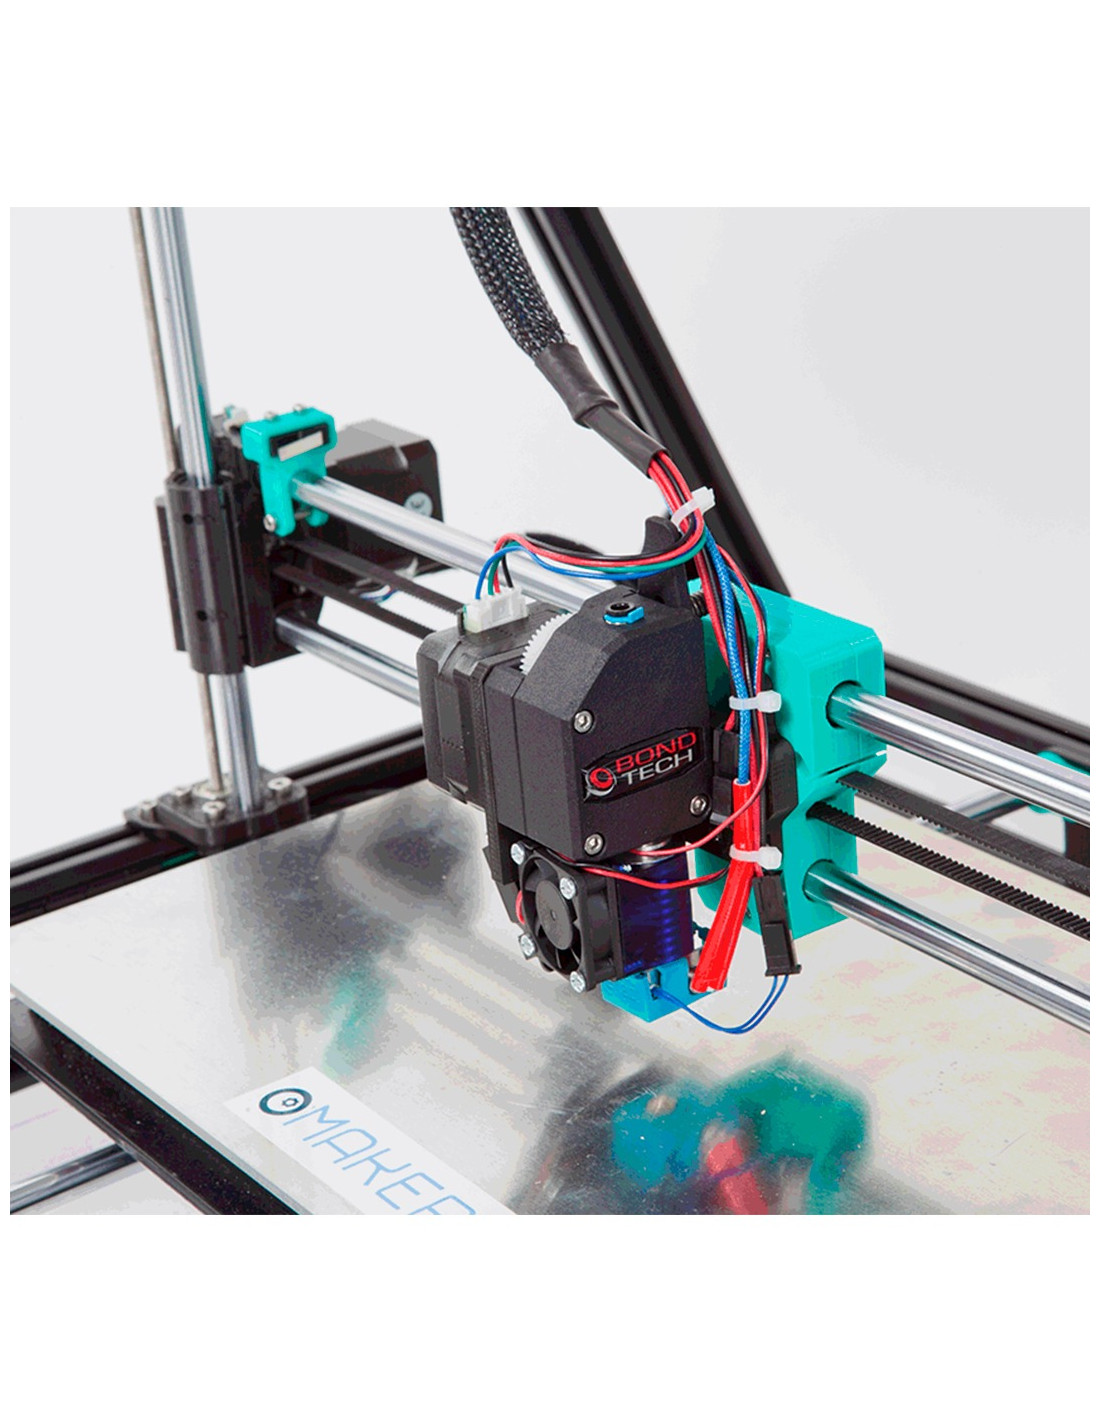 MakerGal Mendel Max XL V6 3D Printer